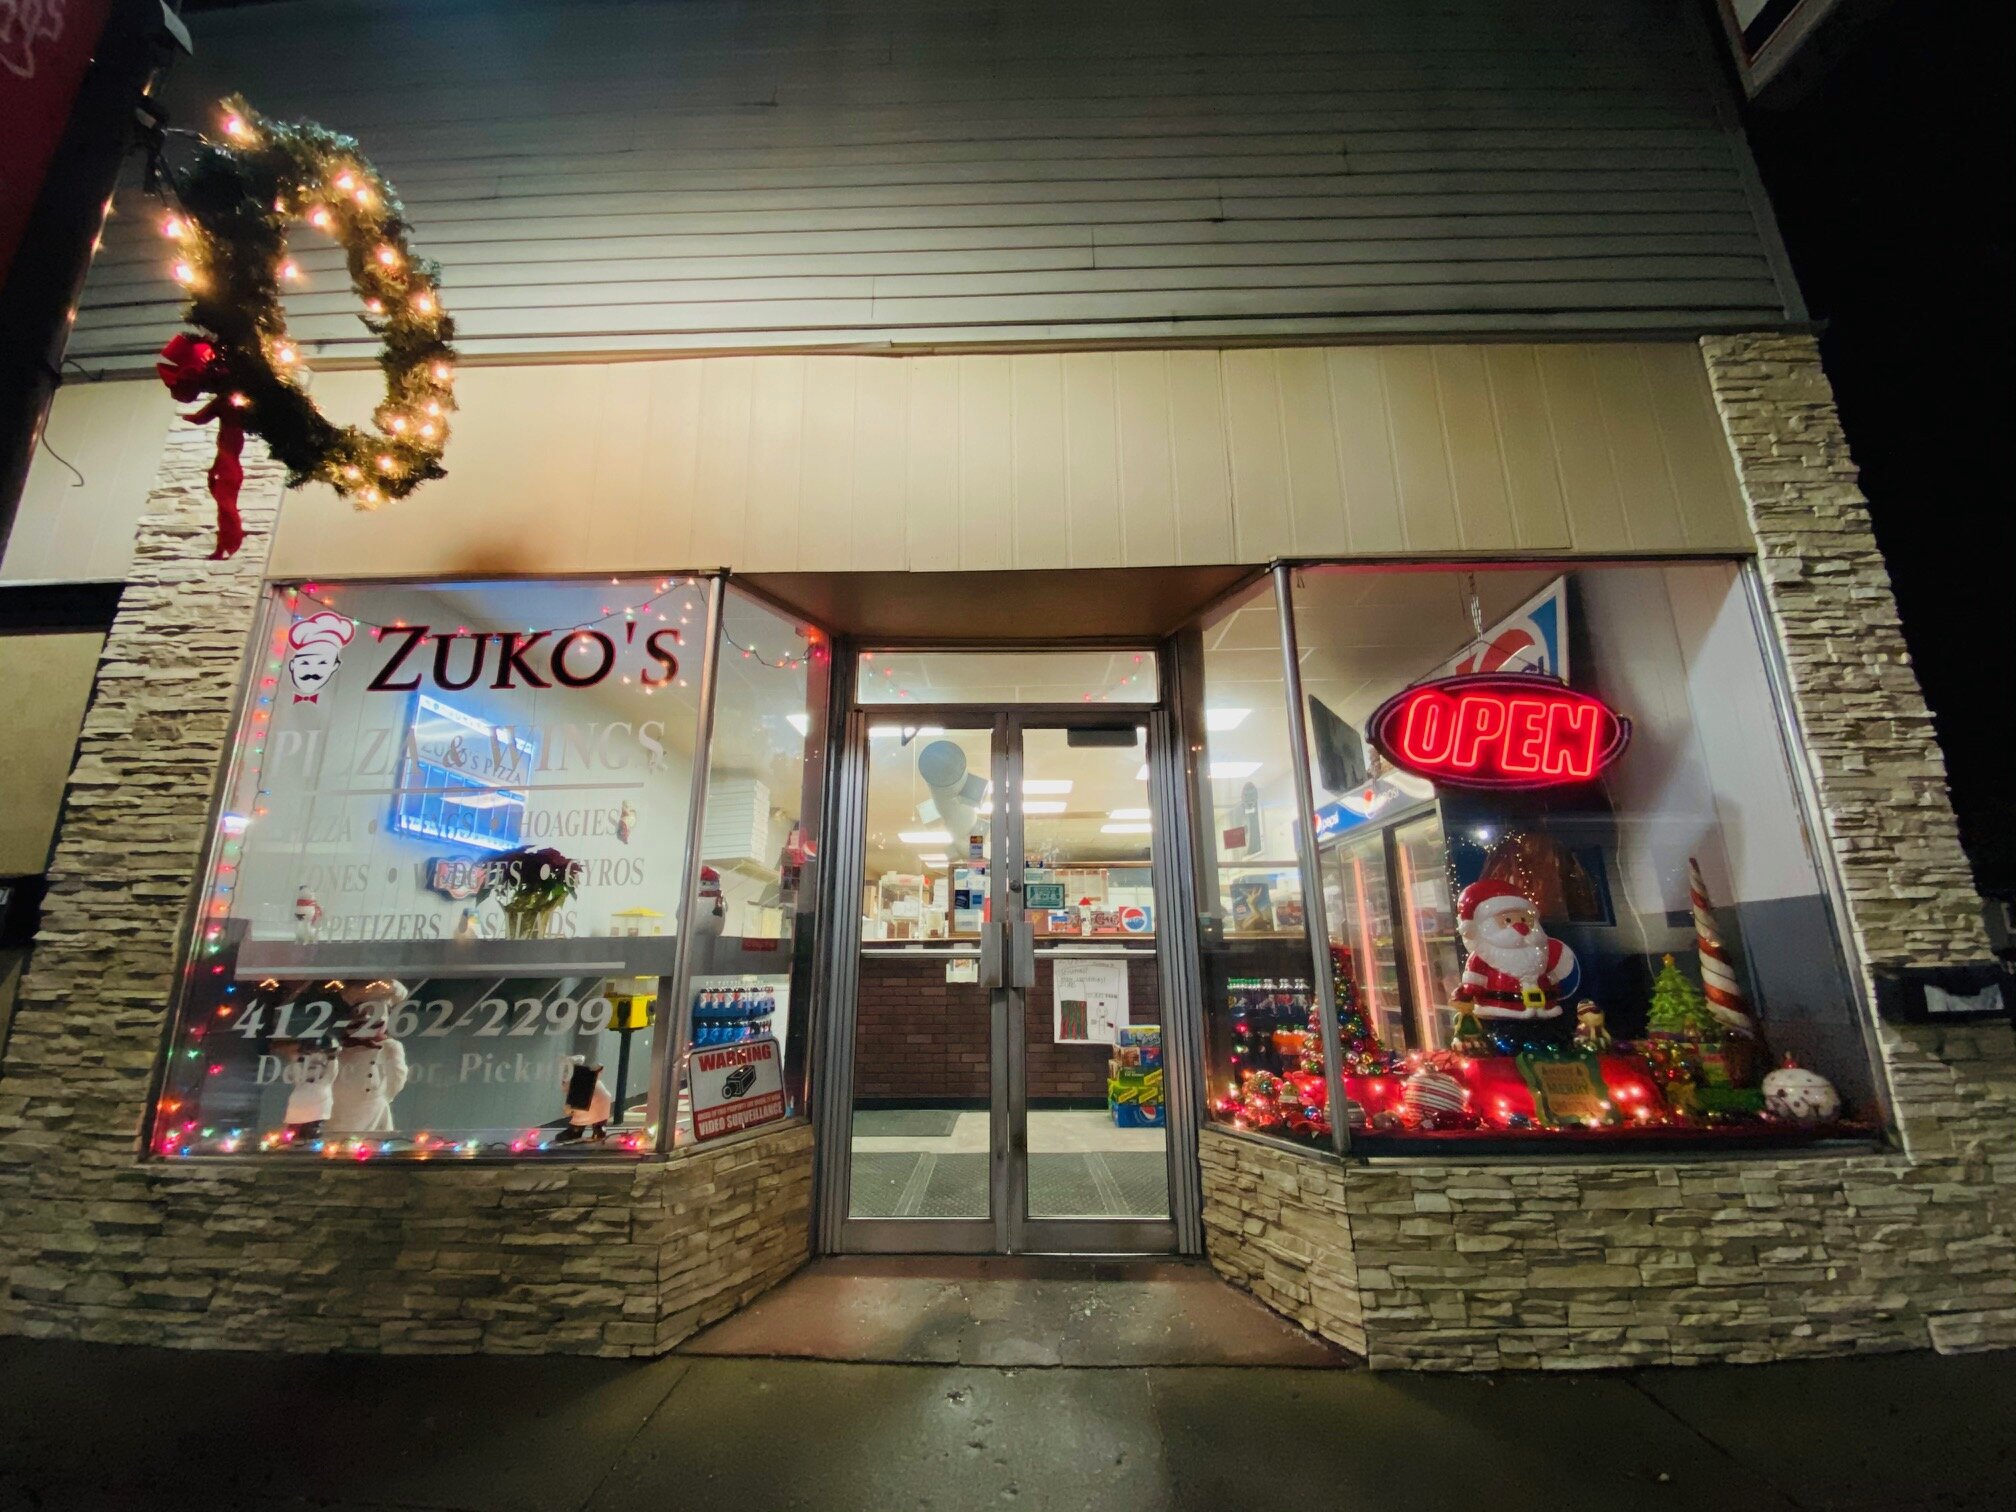 Zuko's Pizza located at 1009 5th Avenue.